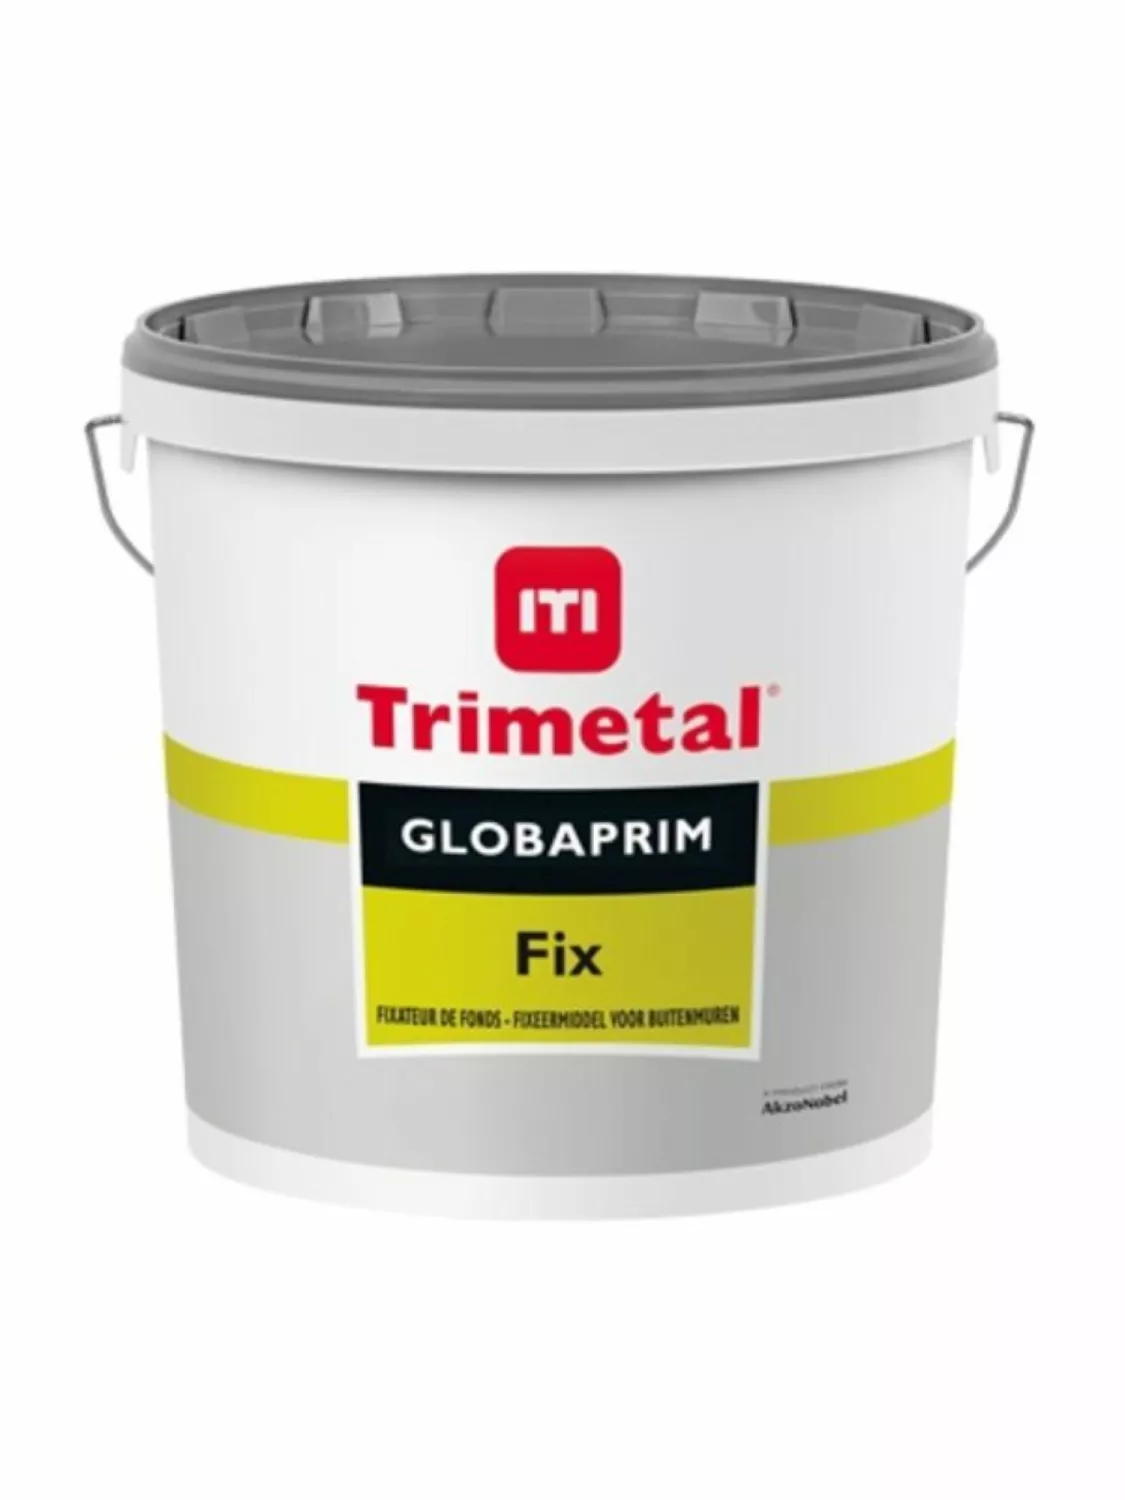 Trimetal Globaprim Fix 10L-image